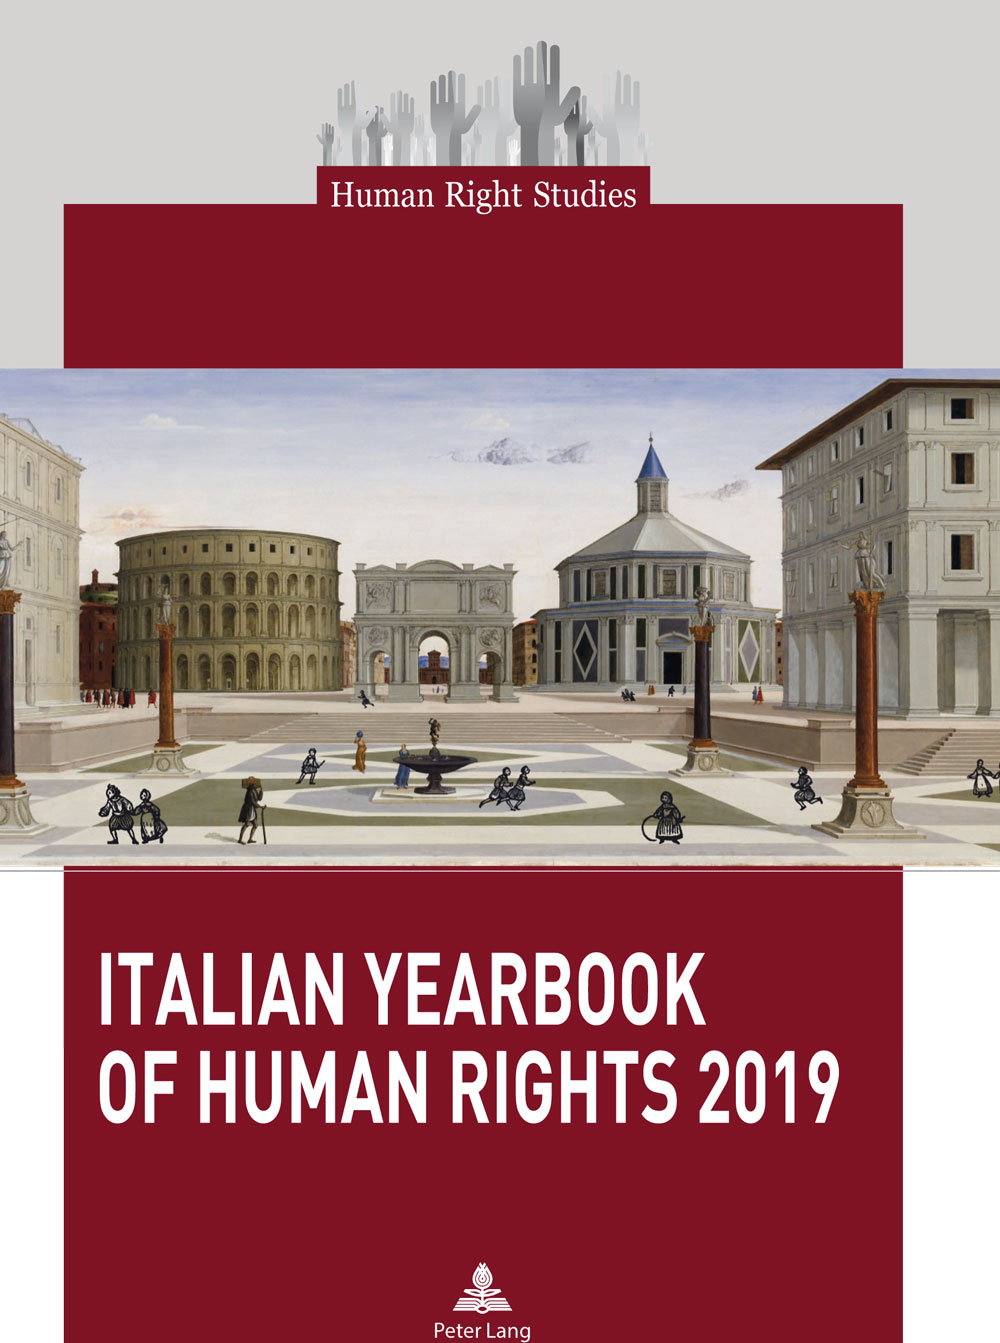 Copertina dello Italian Yearbook of Human Rights 2019